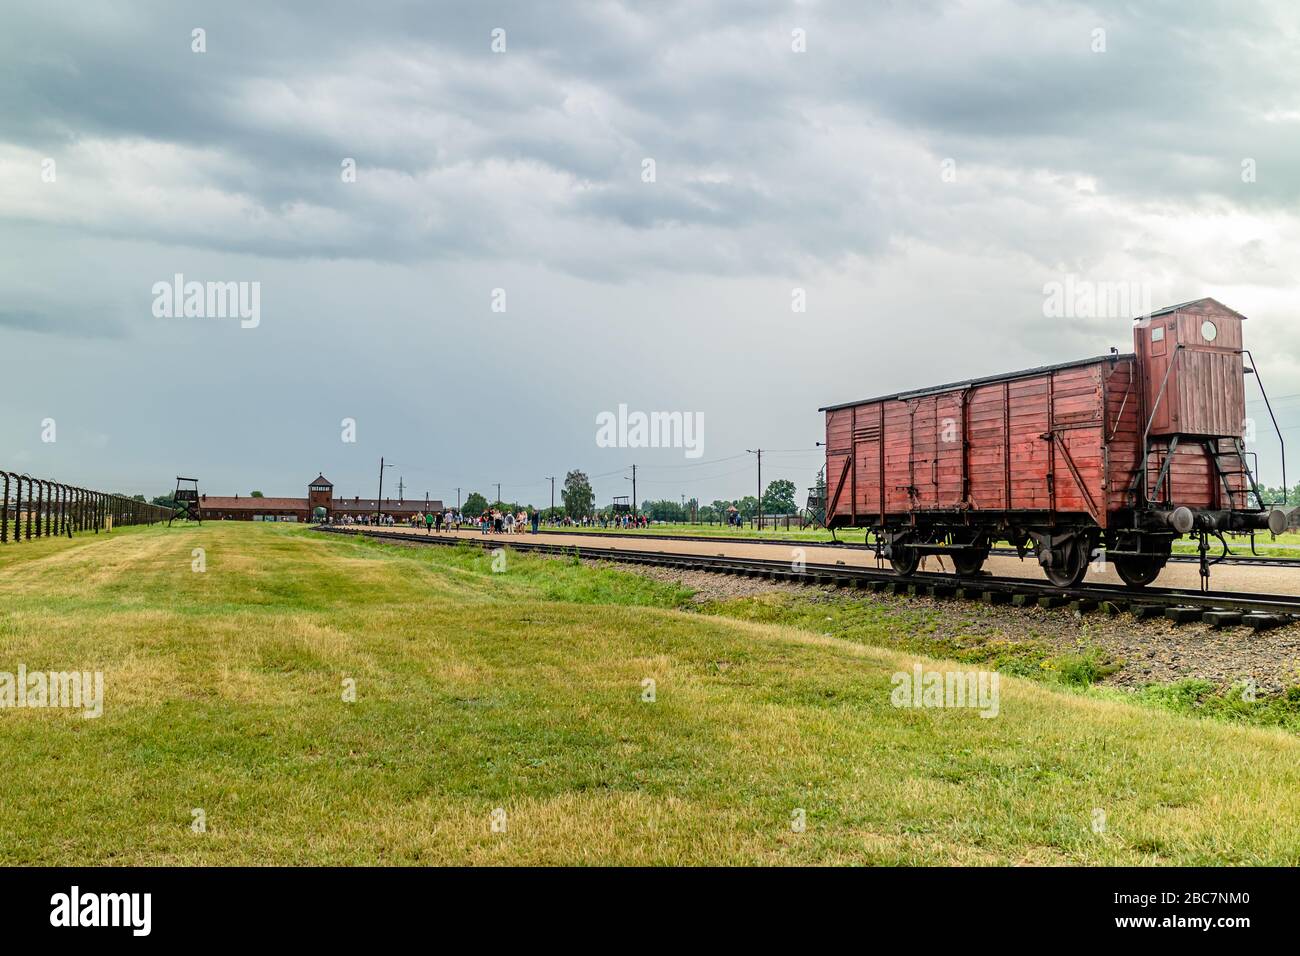 Ein Eisenbahnwaggon im Eingang des Konzentrationslagers Auschwitz-Birkenau der 1940er Jahre, heute in Erinnerung erhalten. Oswiecim, Polen. Juli 2017. Stockfoto